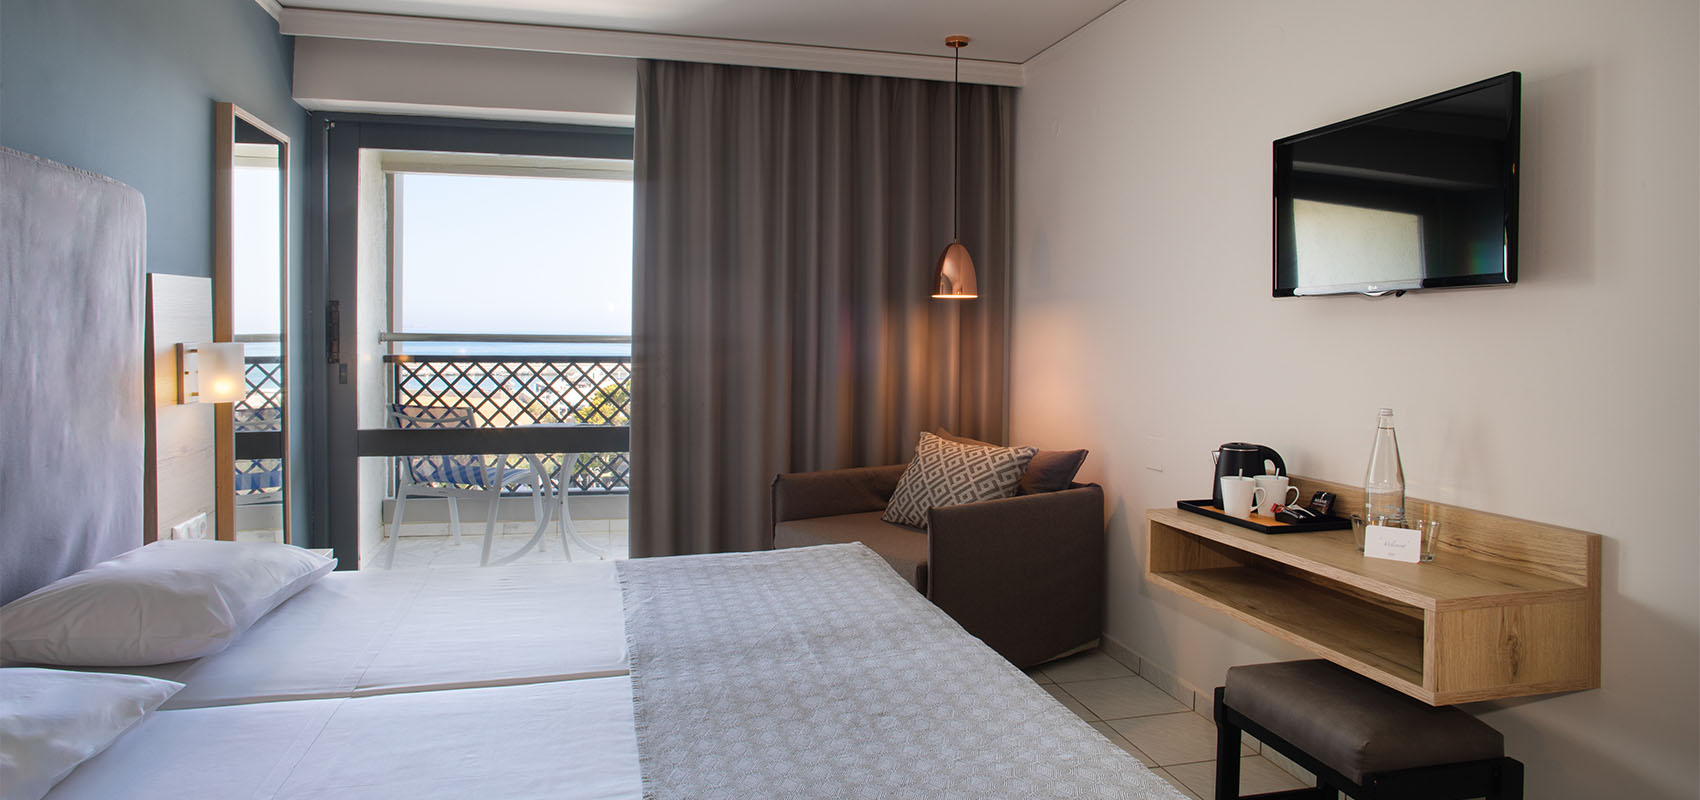 Marina Hotel Double Room